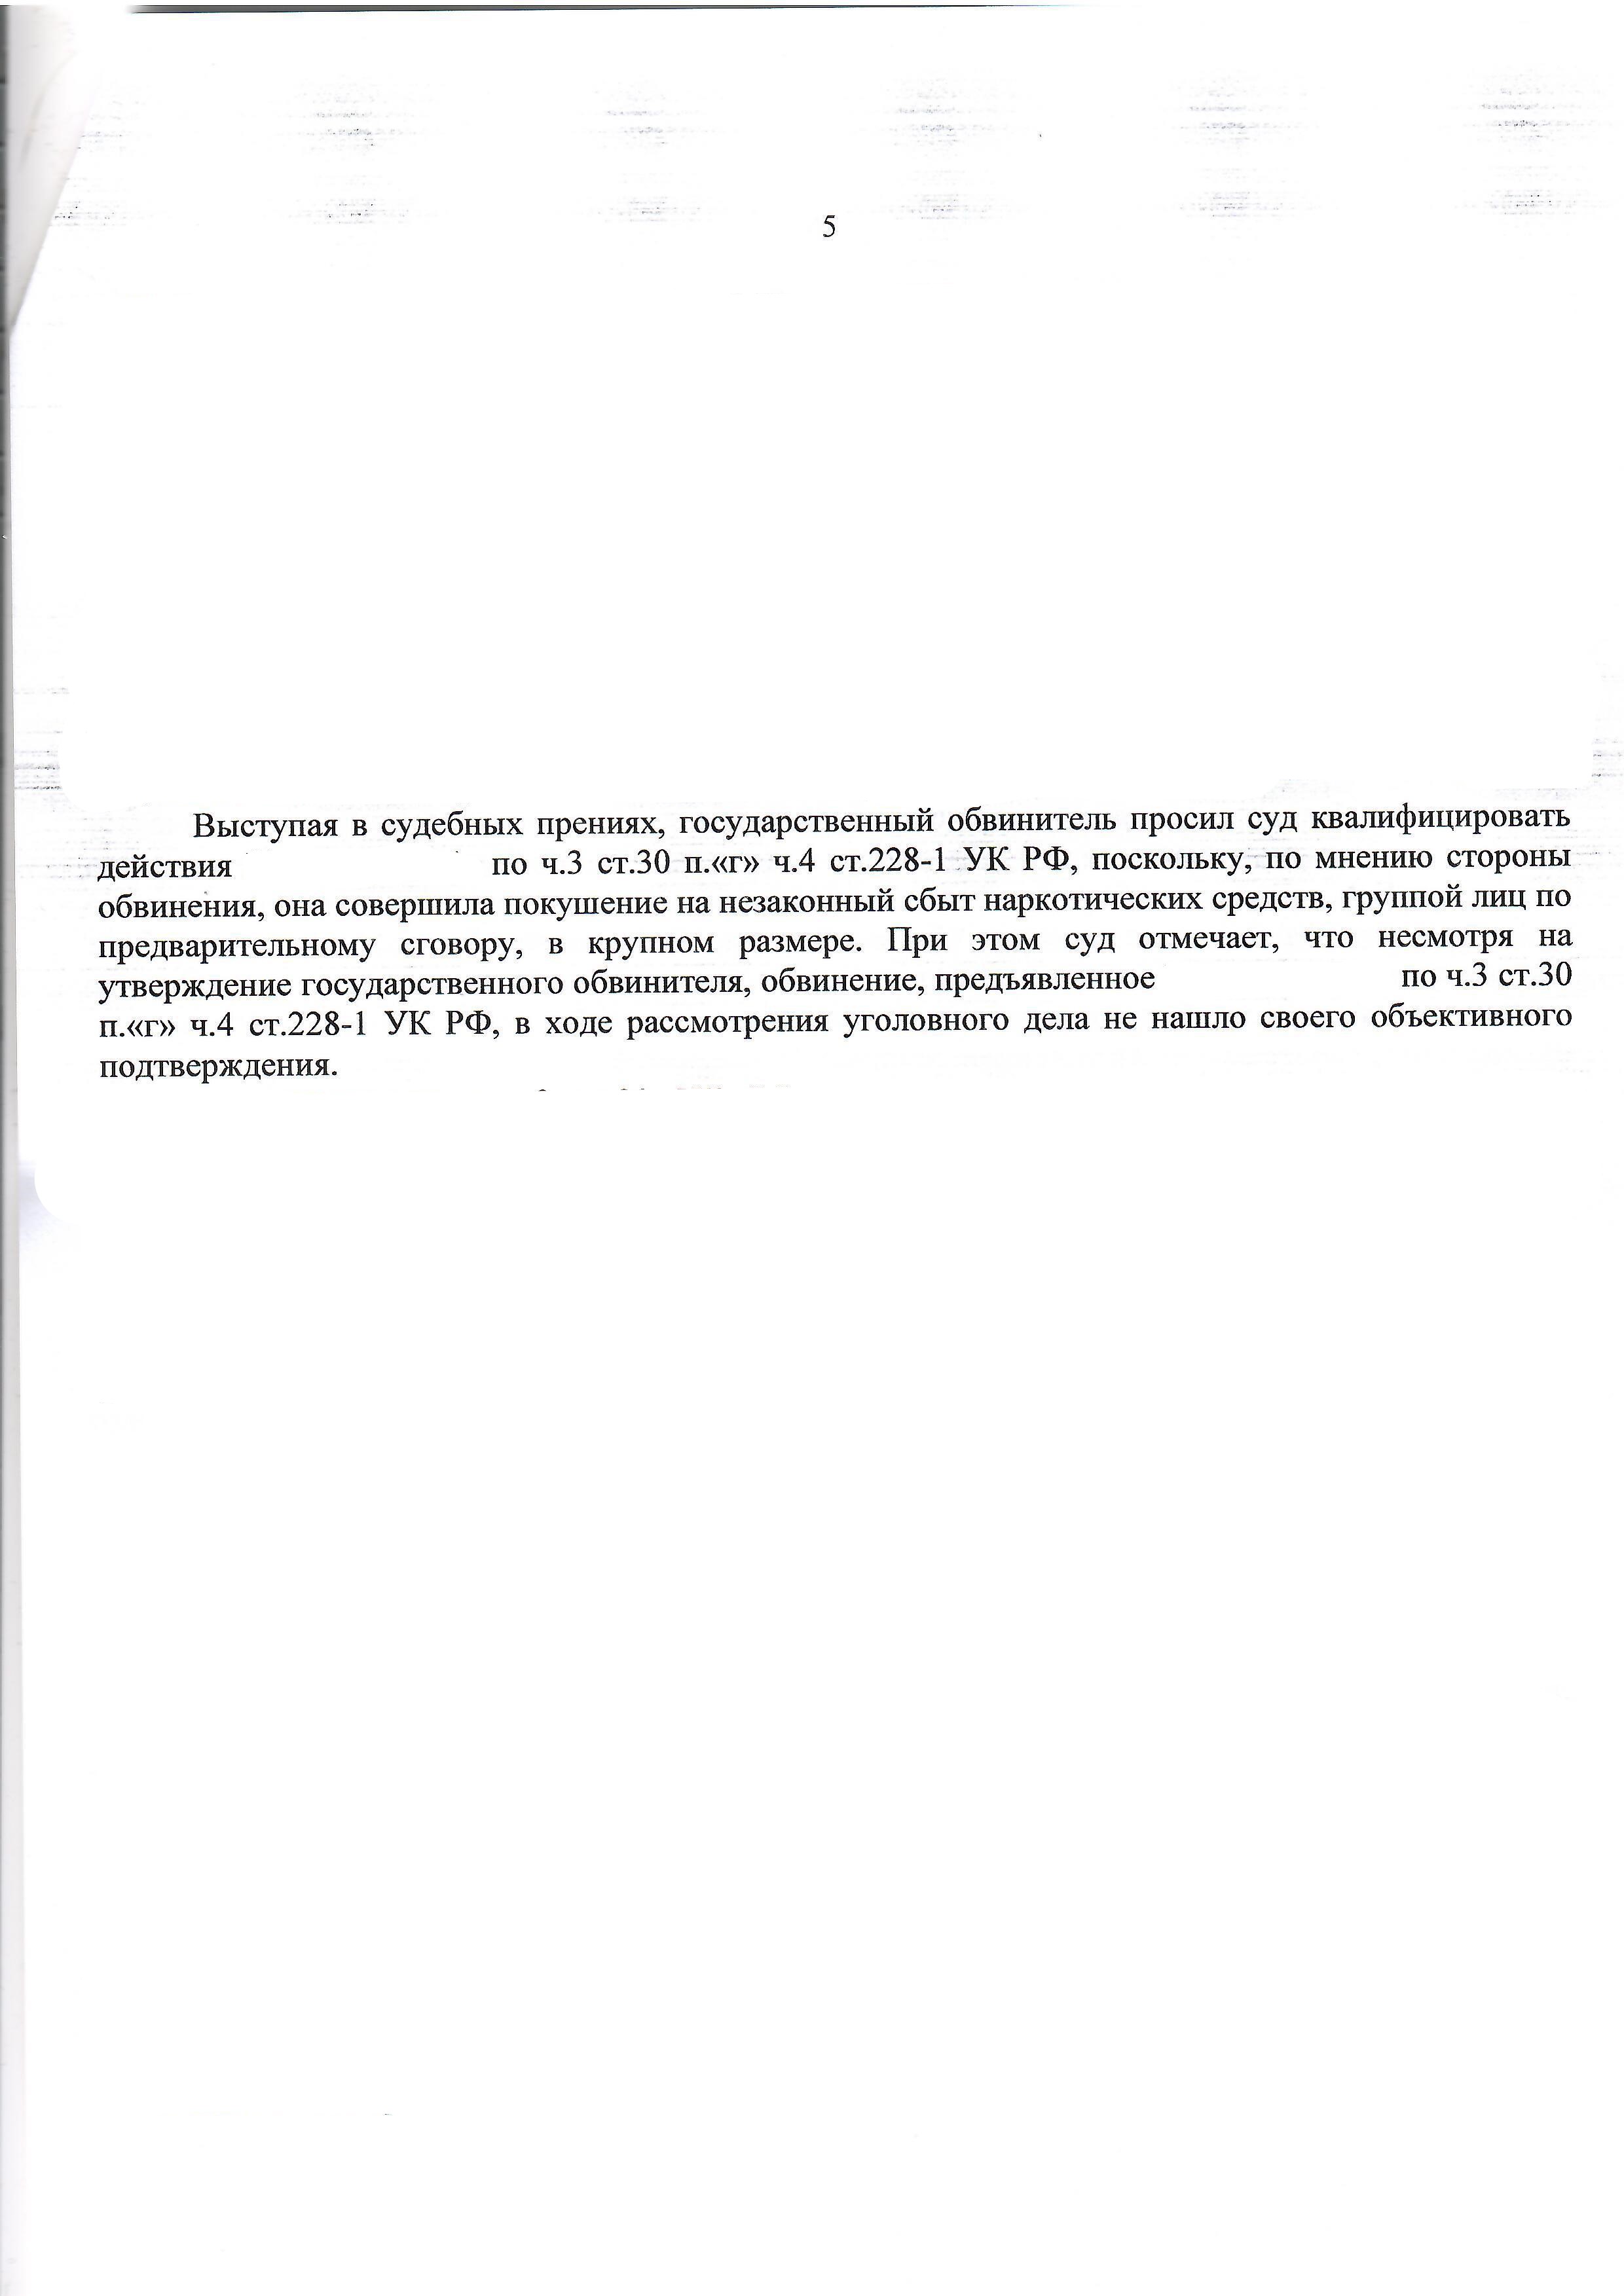 Переквалификация со сбыта на хранение - с ч. 4 ст. 228.1 на ч. 2 ст. 228 УК РФ